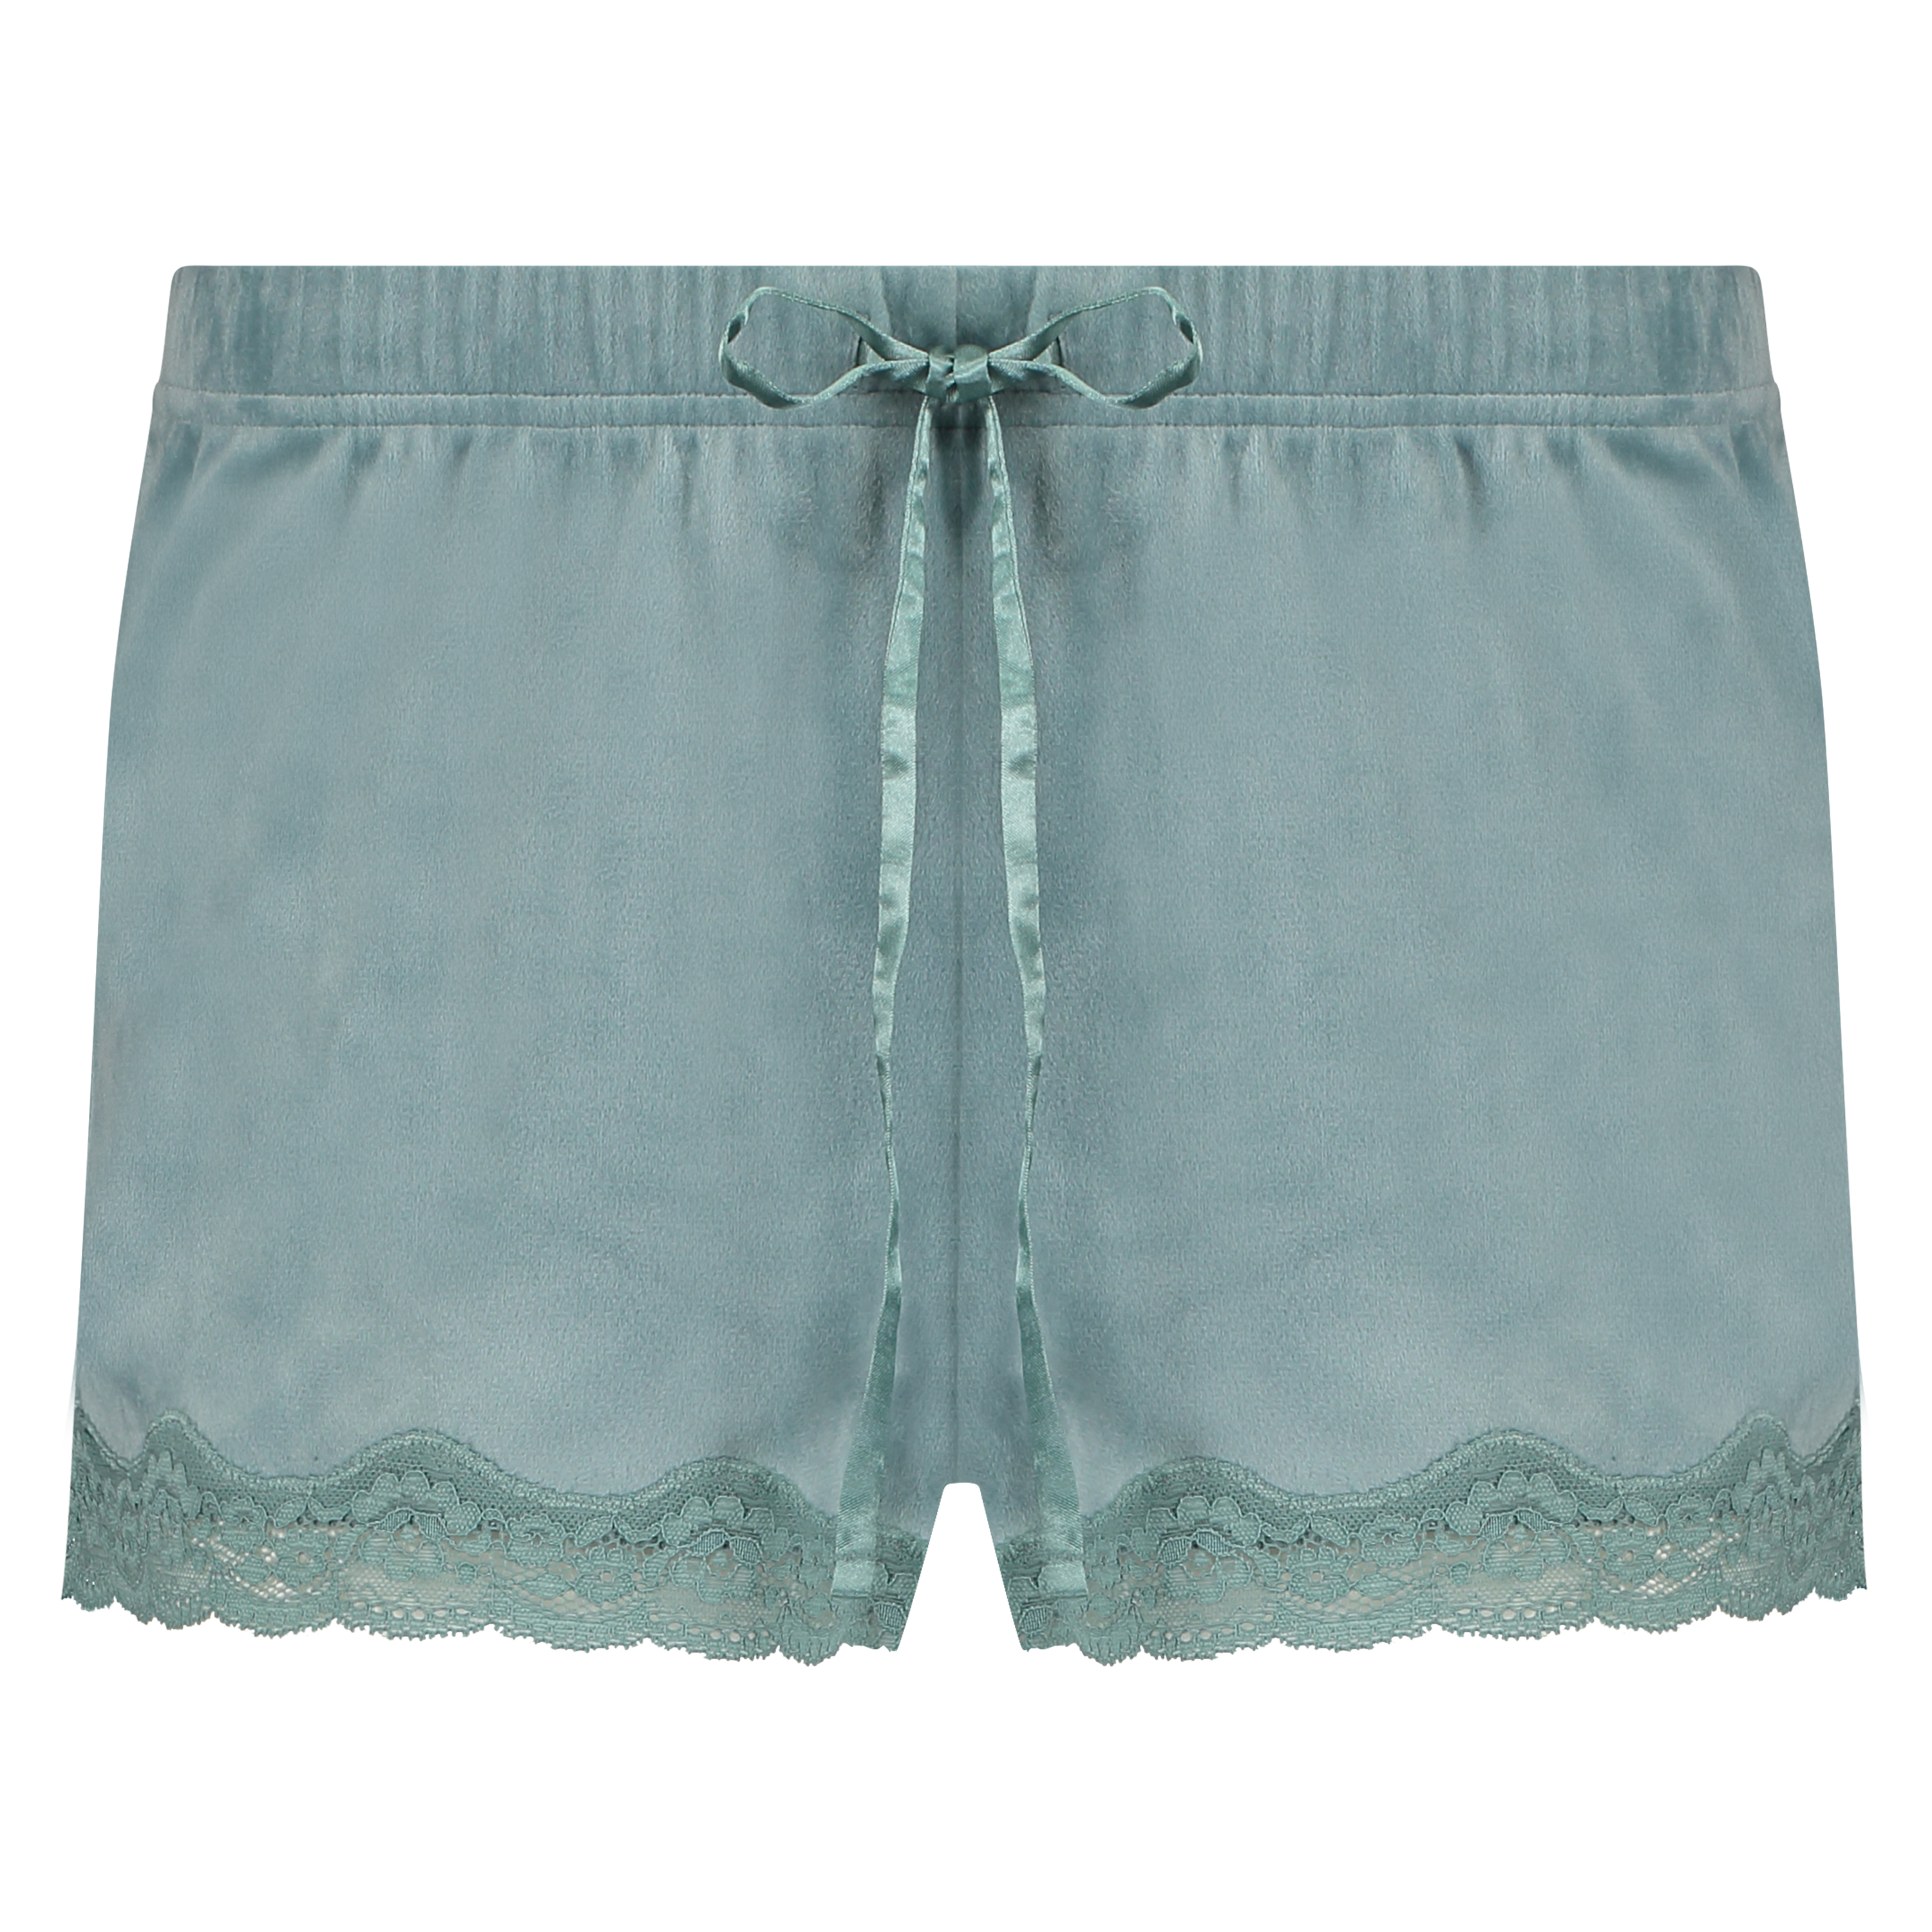 Velvet lace shorts, Grønn, main